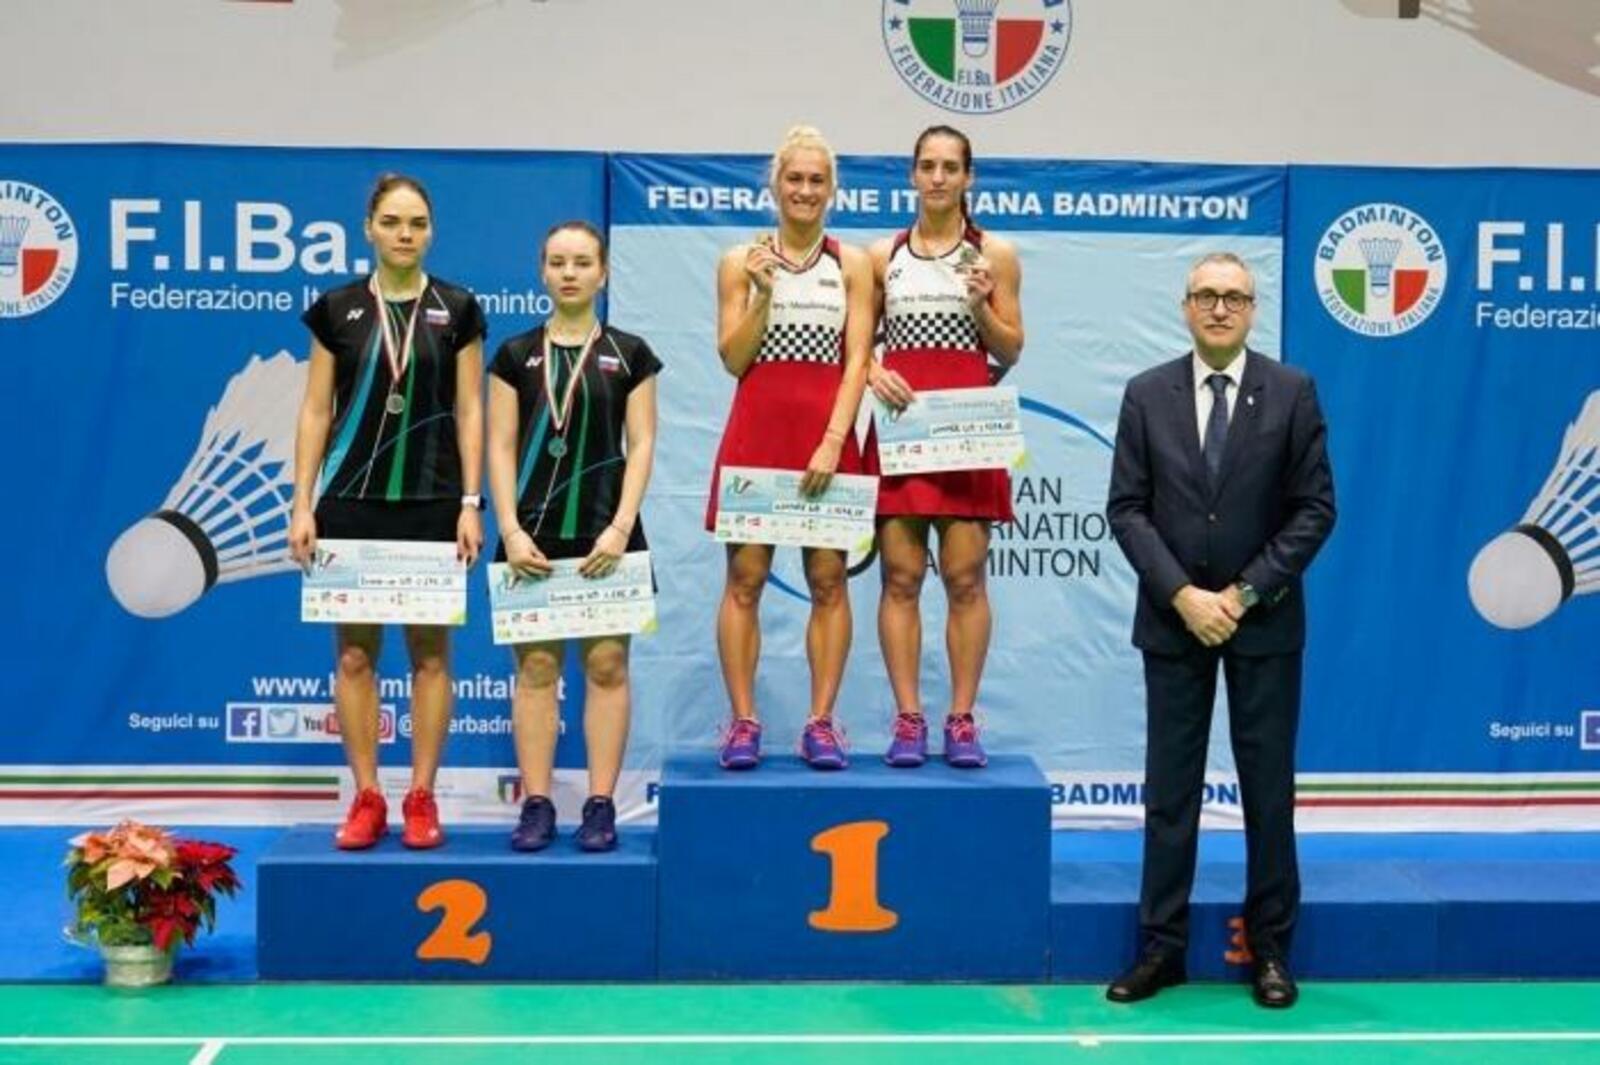 Federazione Italiana Badminton